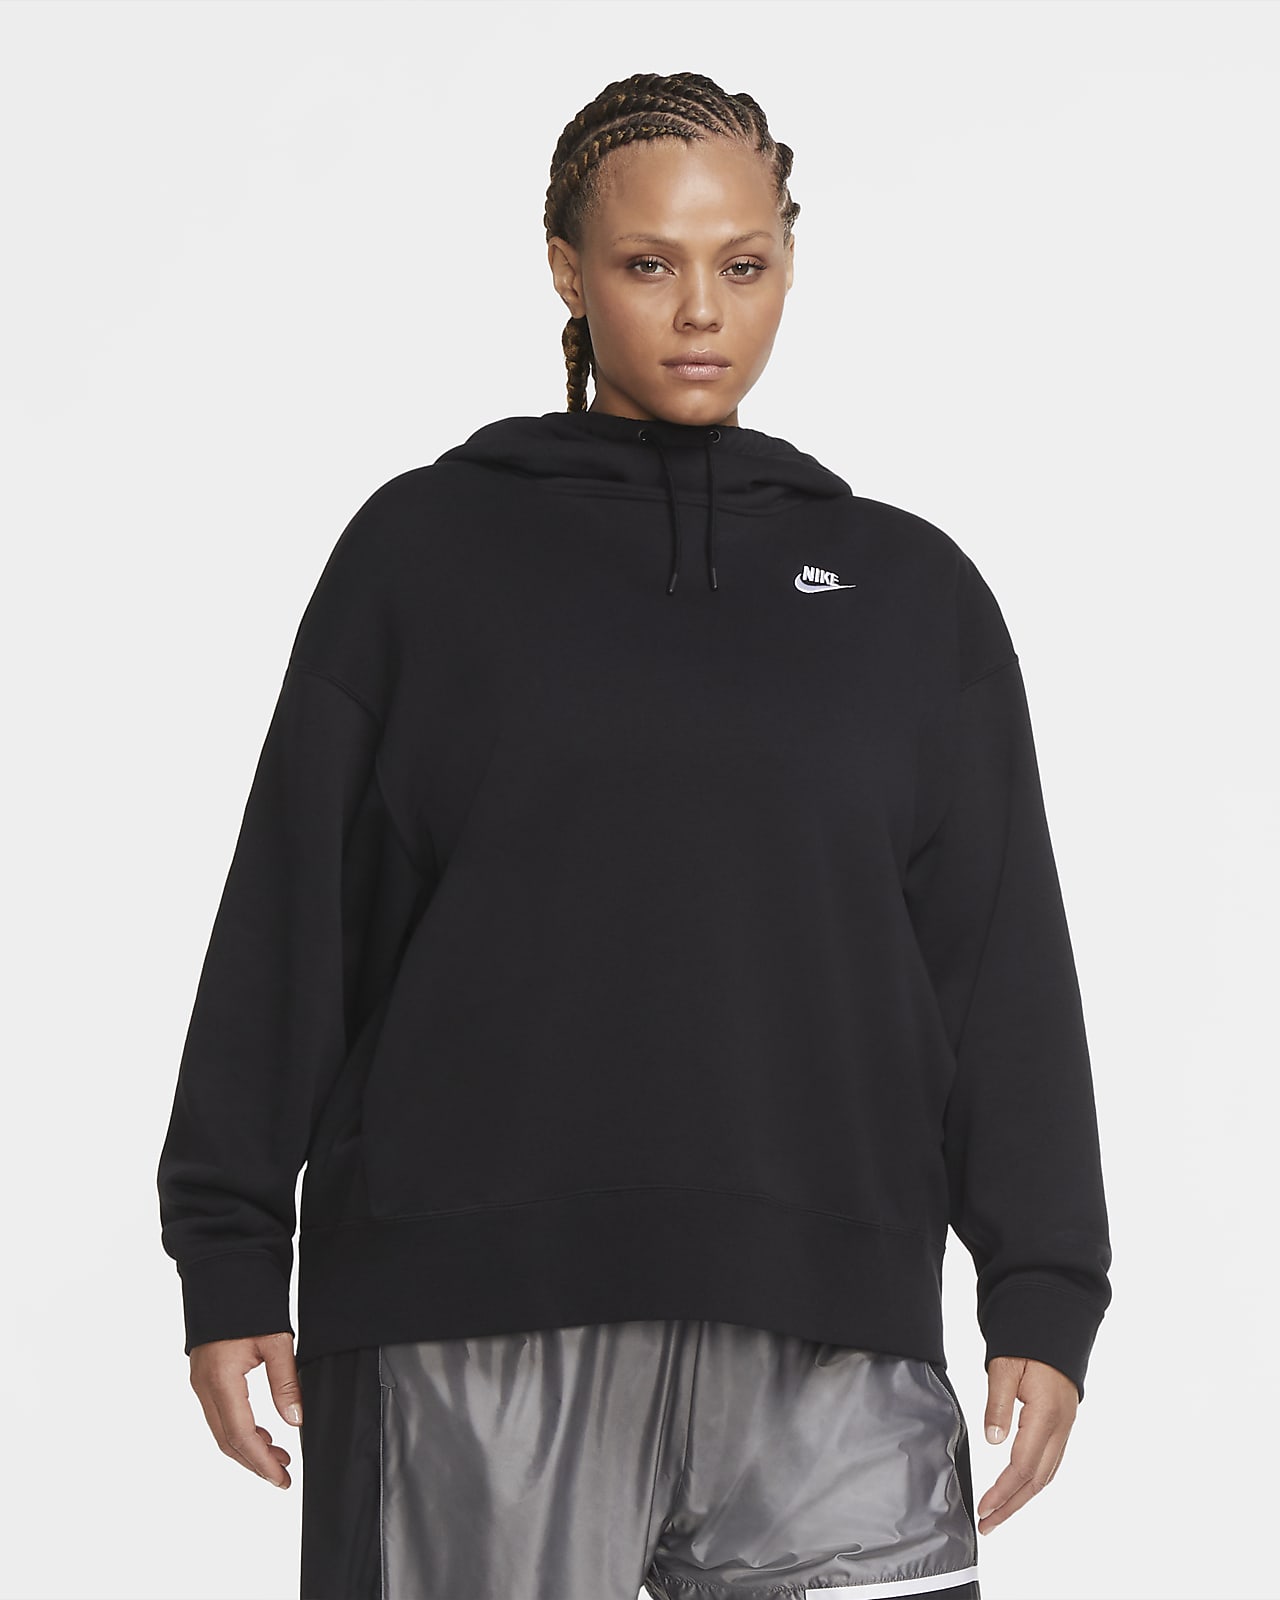 Nike Sportswear Women's Fleece Hoodie 